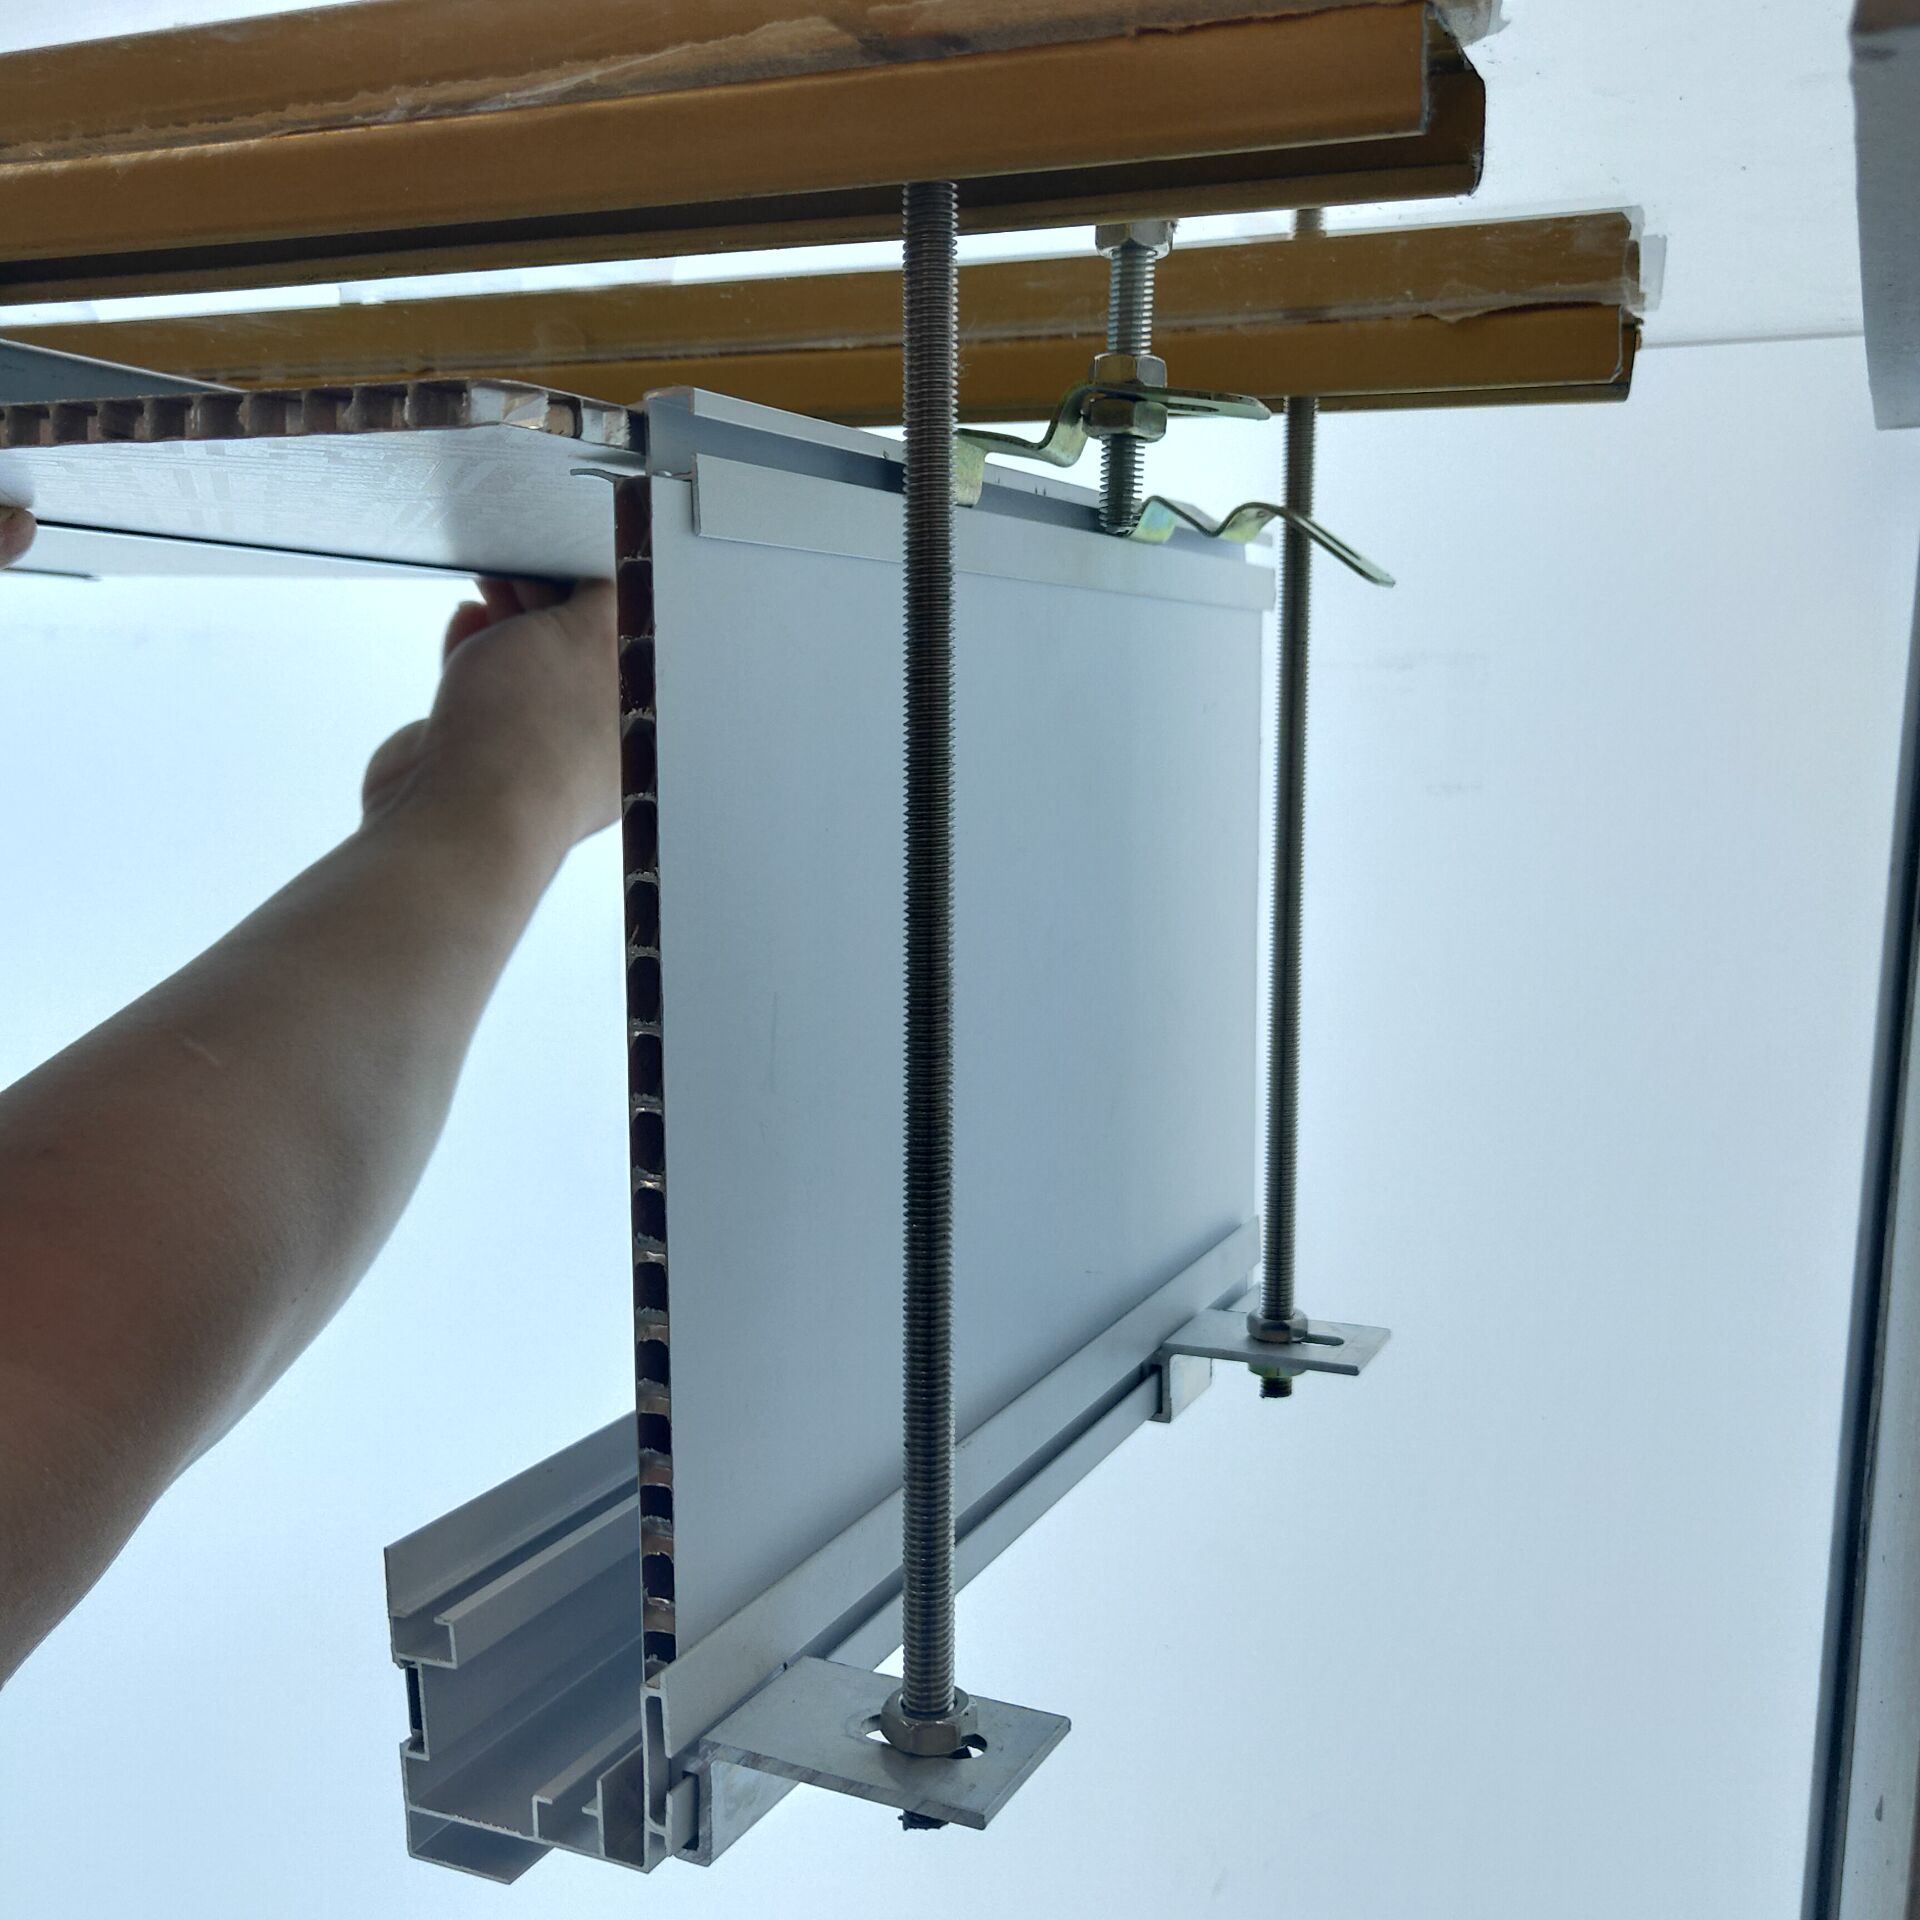 天花吊顶很多都是采用轻便的铝板使用,如今使用铝蜂窝板吊顶风格优势